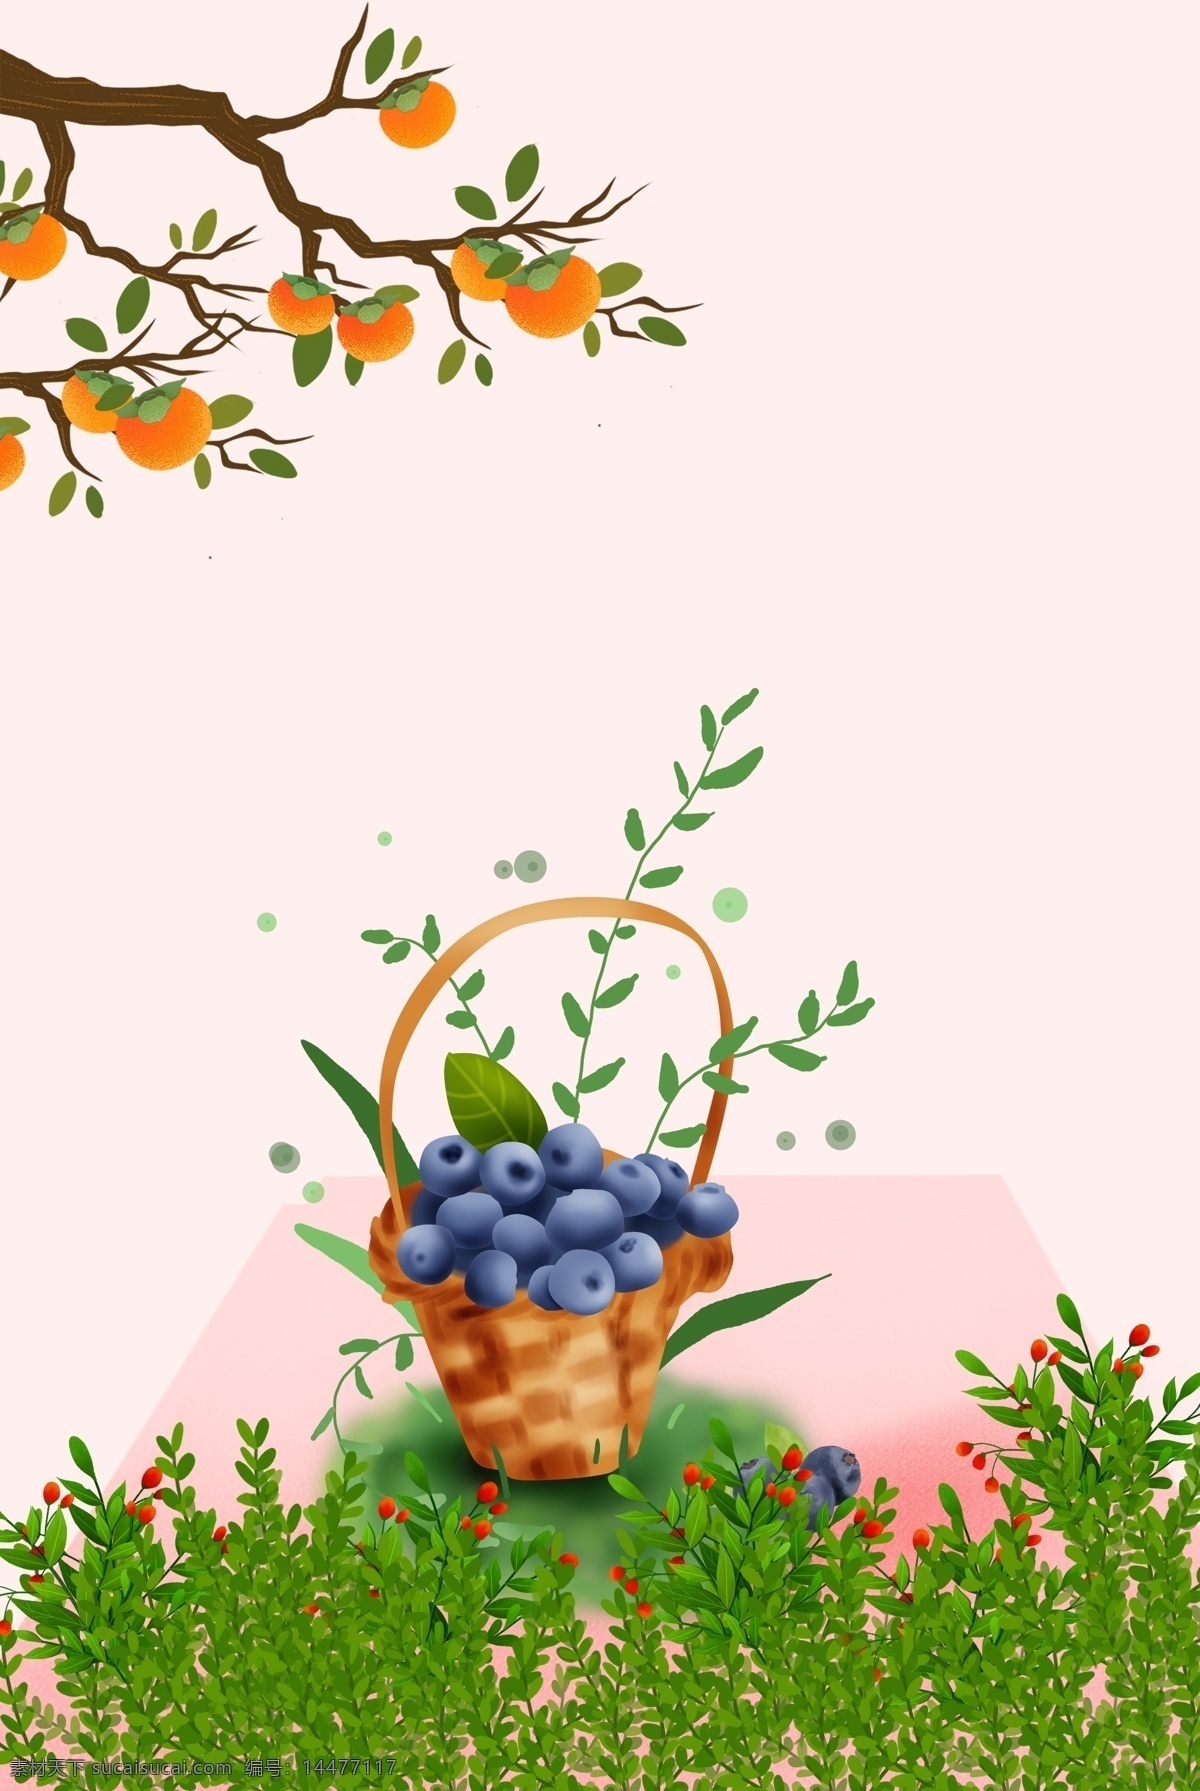 水果花卉背景 简约 清新 纹理 淡雅 水果 蓝莓 卡通 花卉 柿子